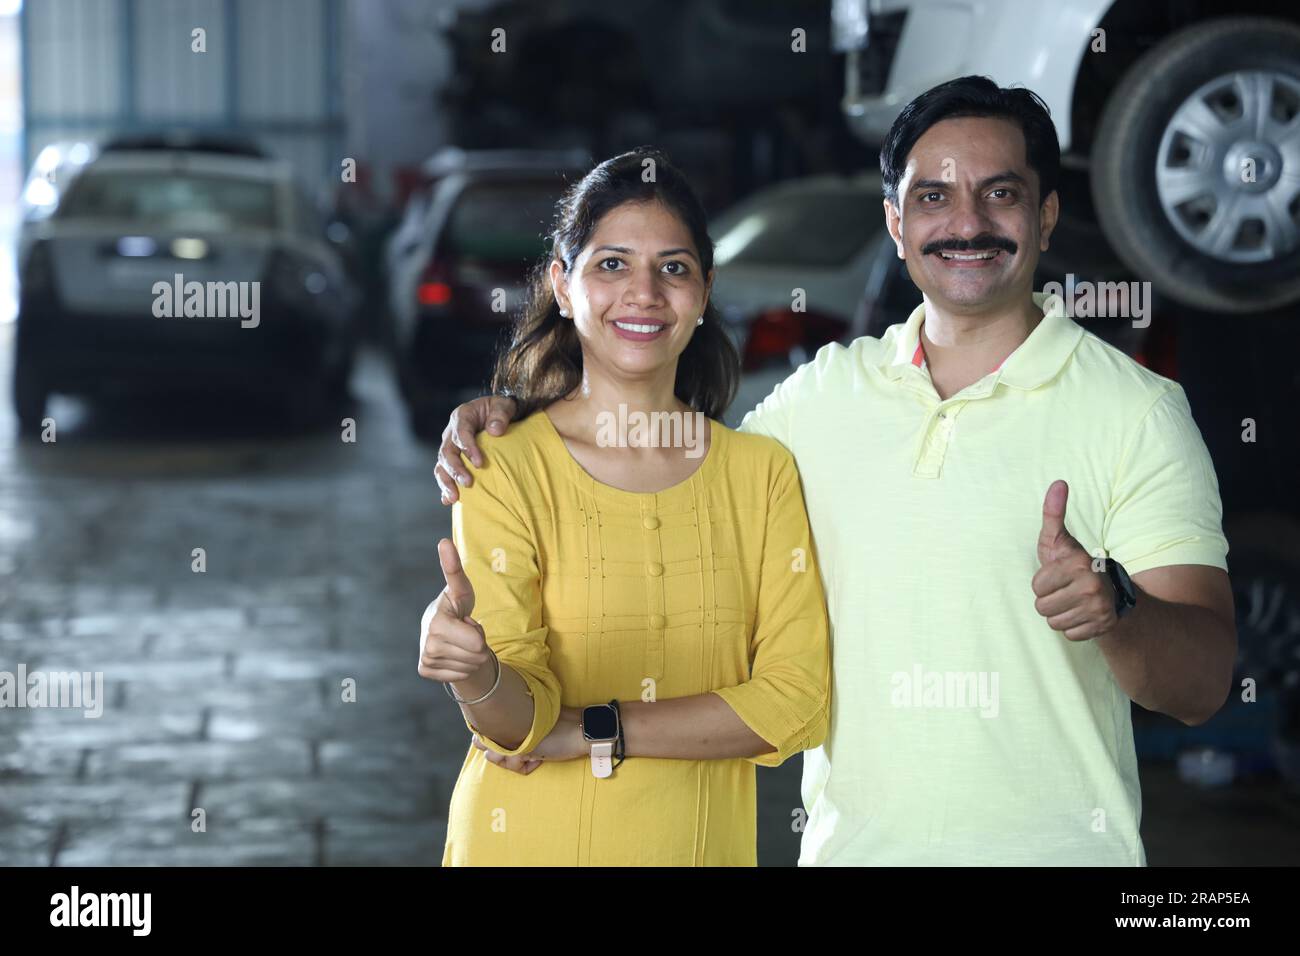 Indische glückliche Kundin, die Daumen hoch zeigt, weil sie das Auto repariert hat. Darstellung des Kundenvertrauens und der Kundenzufriedenheit gegenüber der Tankstelle Stockfoto